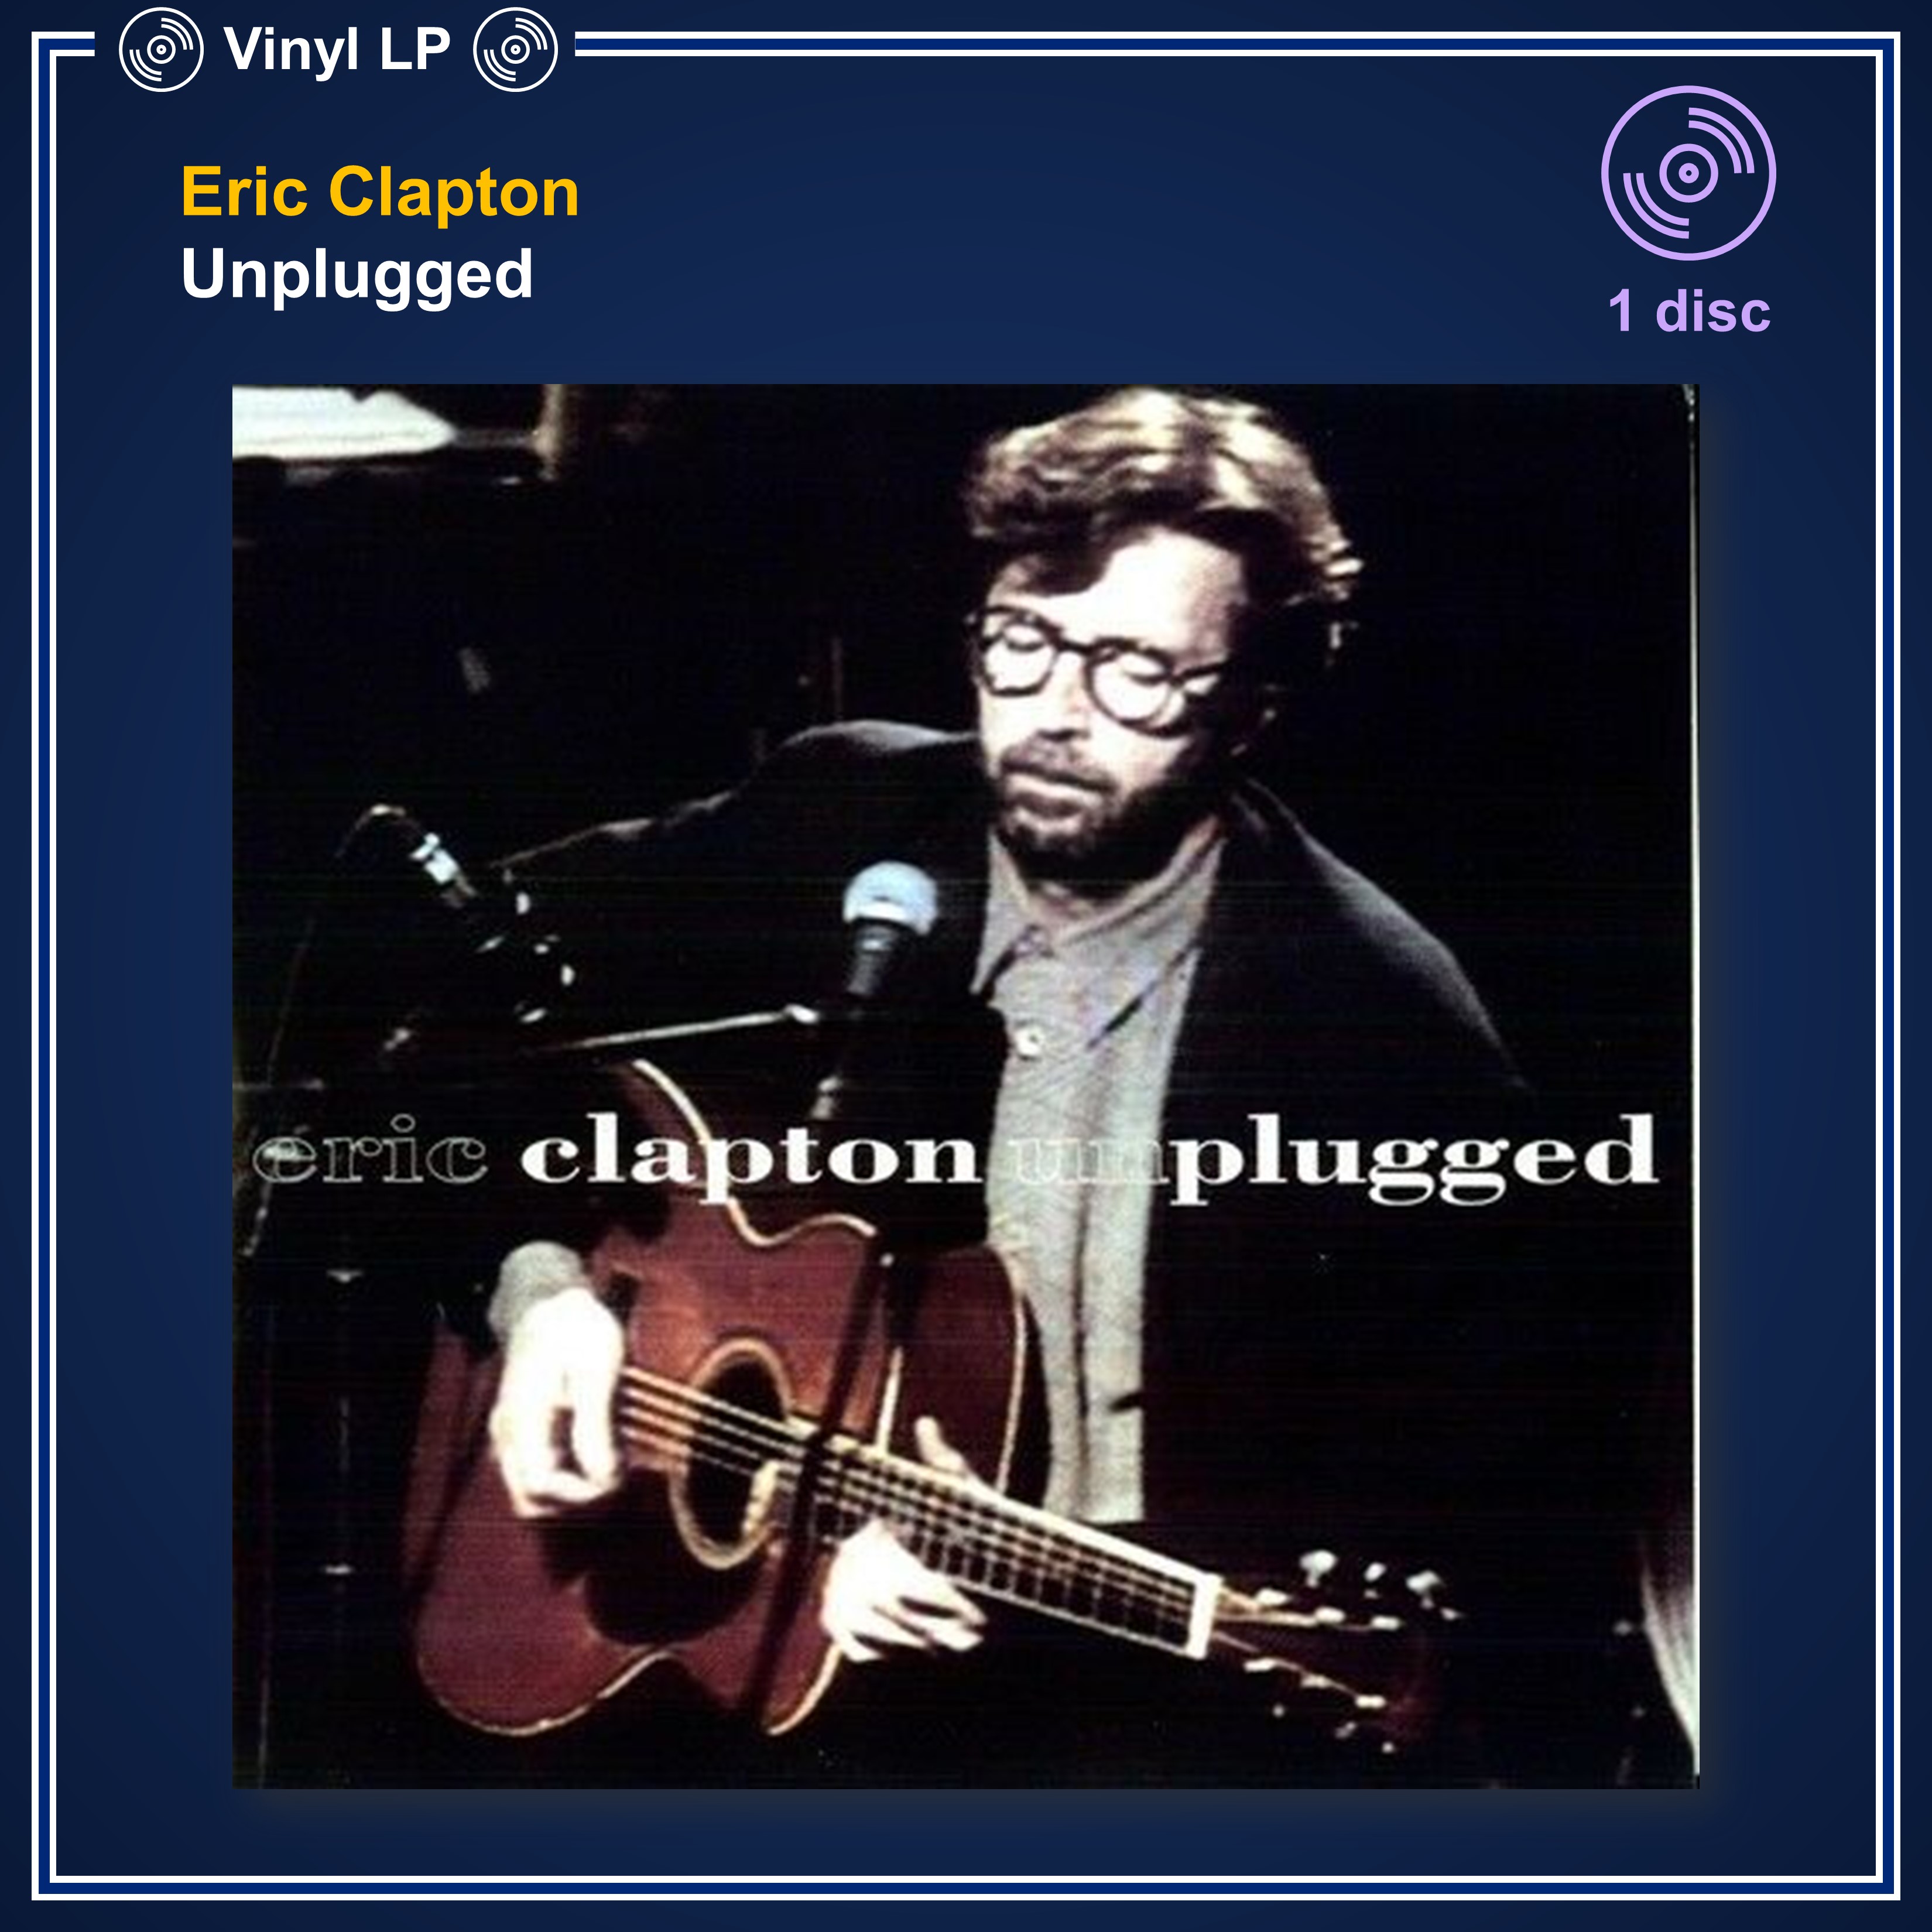 [แผ่นเสียง Vinyl LP] Eric Clapton - Unplugged [ใหม่และซีล SS]